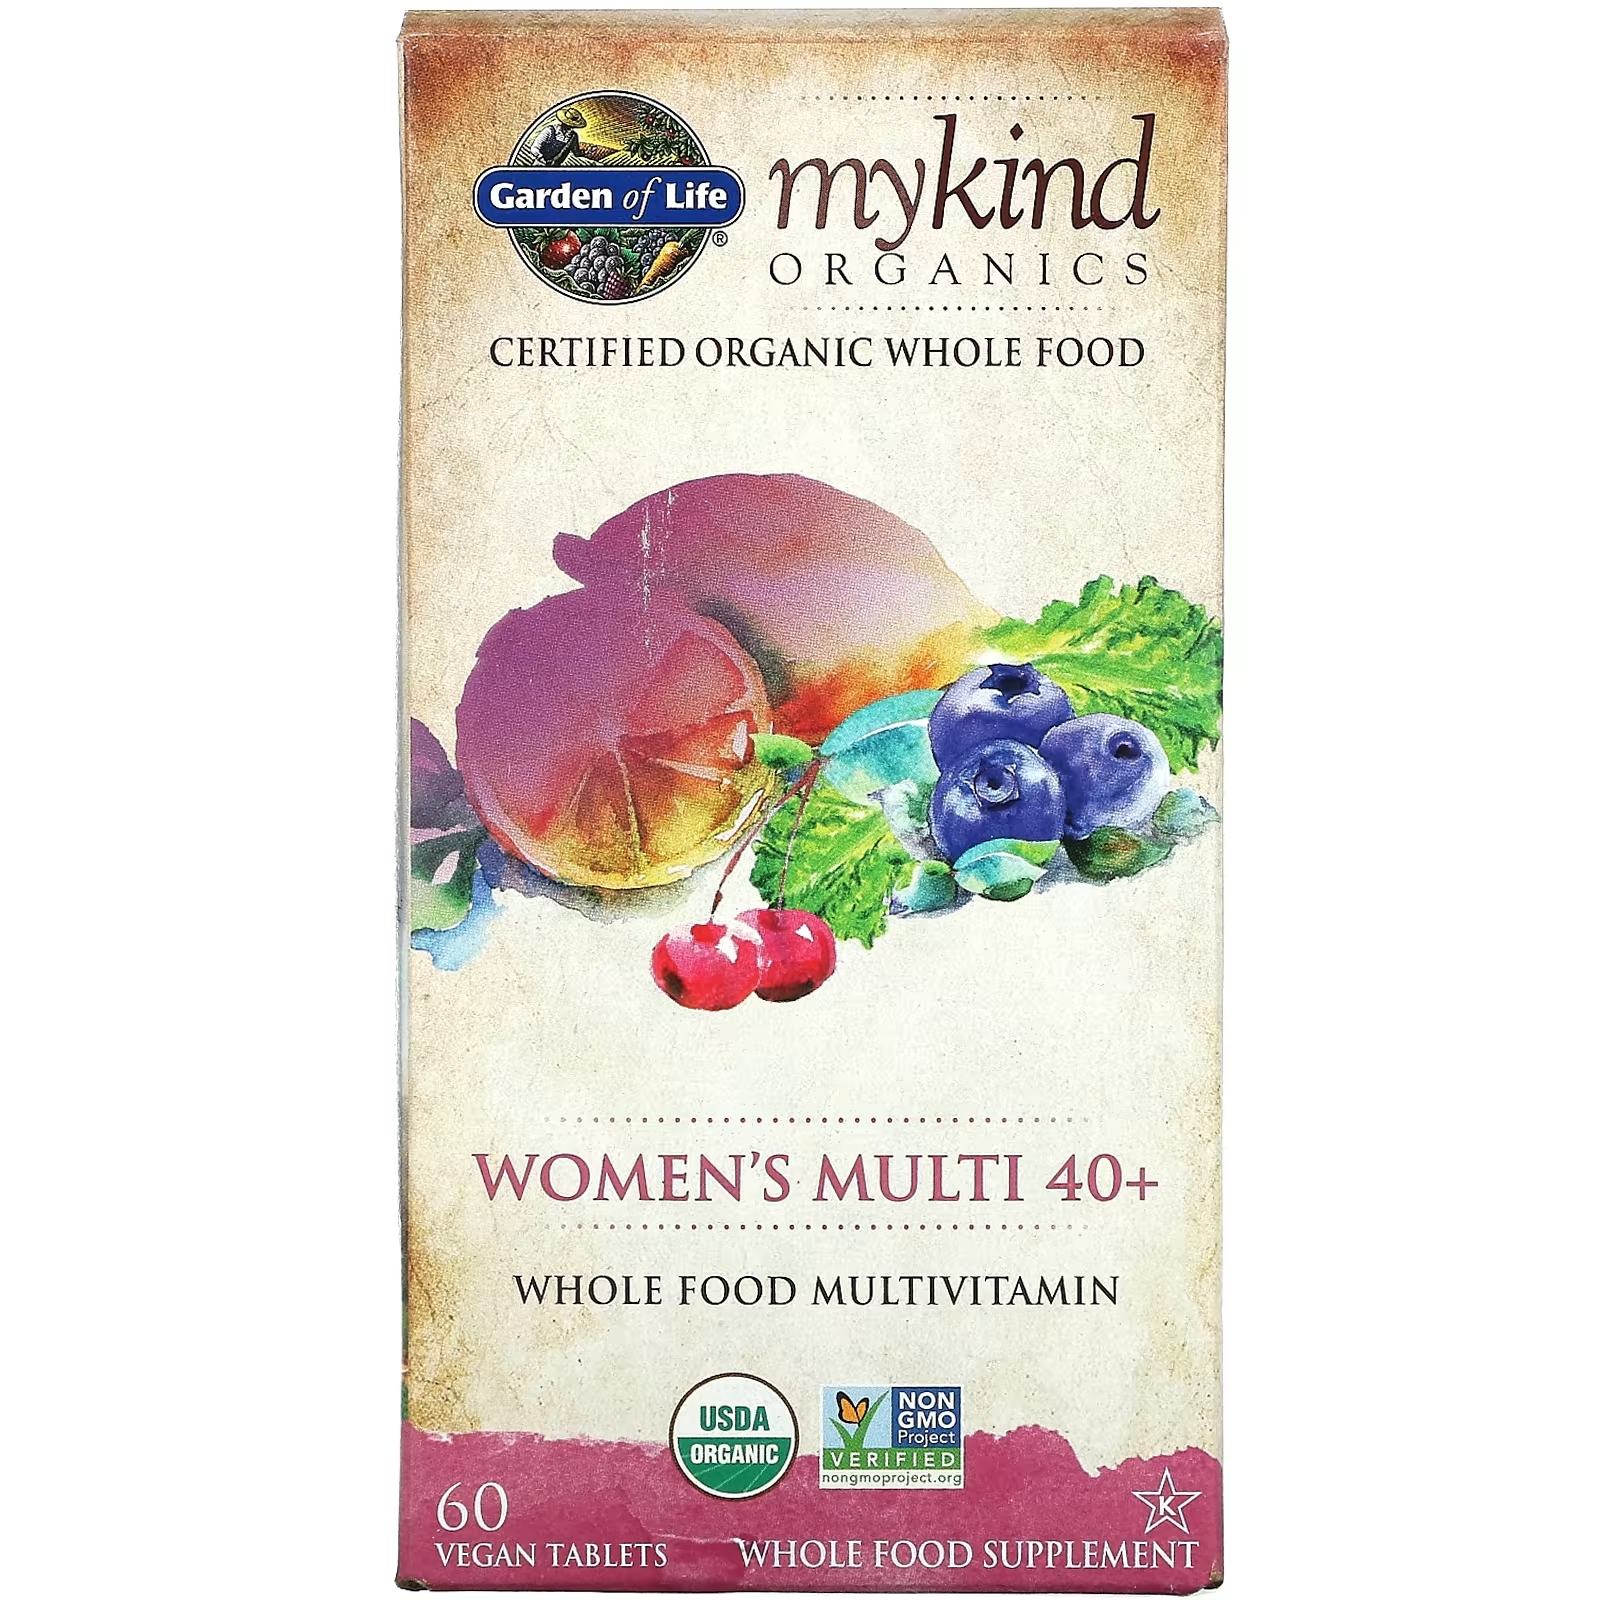 Мультивитамины для Женщин Старше 40 лет Garden of Life MyKind Organics, 60 веганских таблеток мультивитамины для женщин garden of life mykind ягоды 120 жевательных таблеток